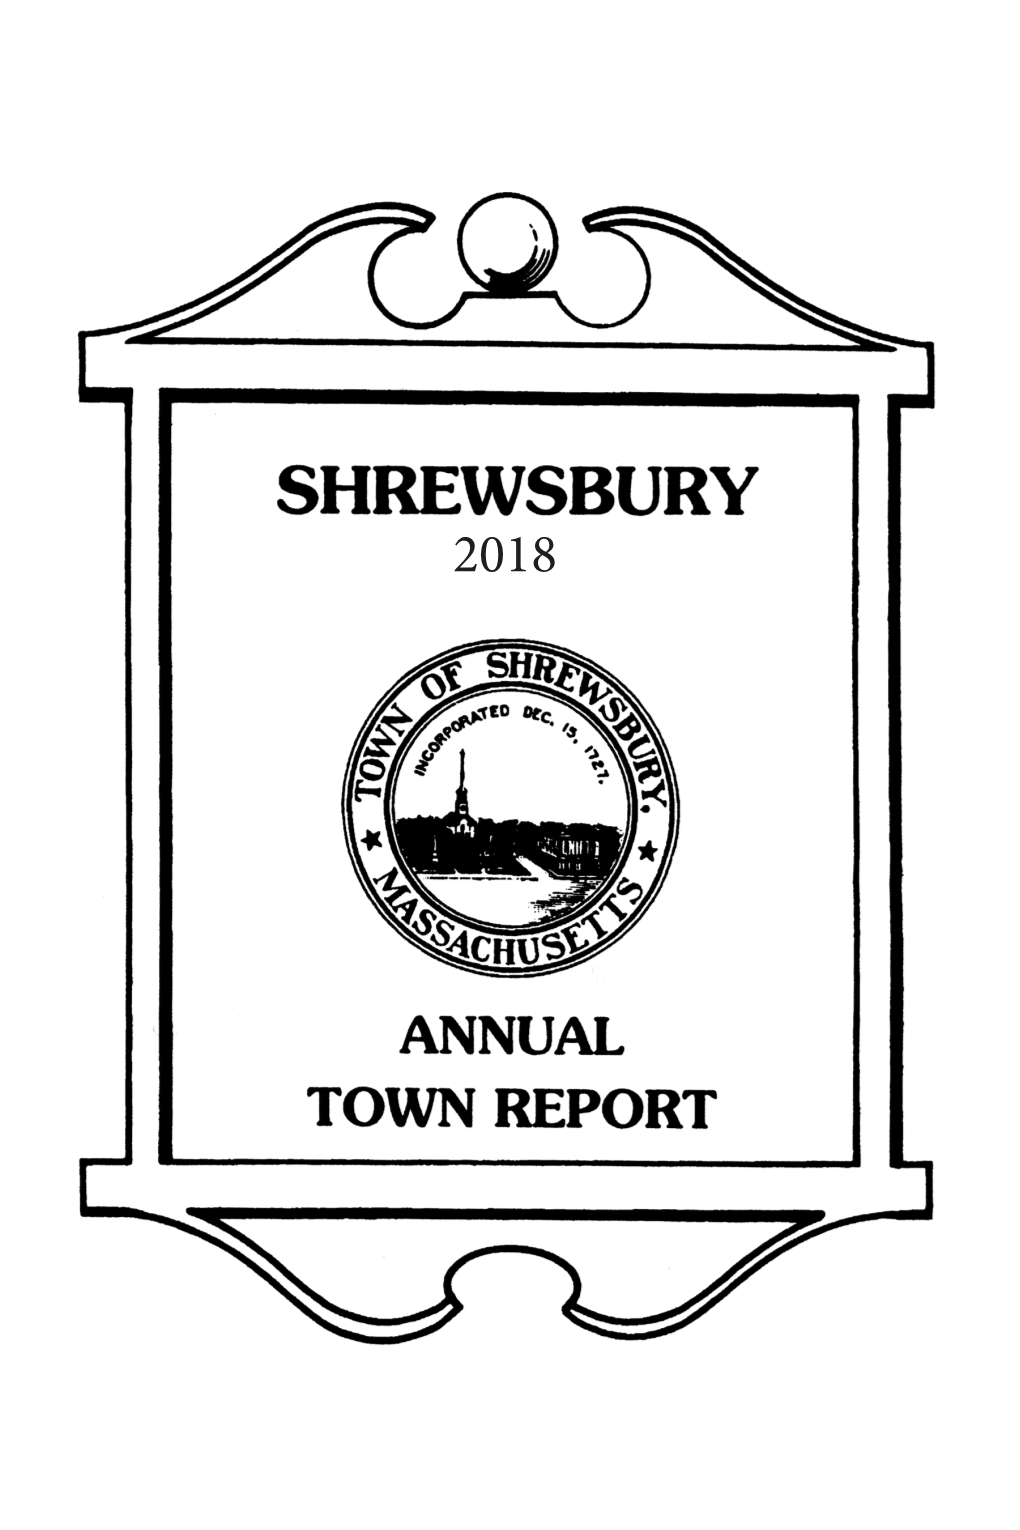 2018 Shrewsbury Town Report 2018 2018 Shrewsbury Town Report 2018